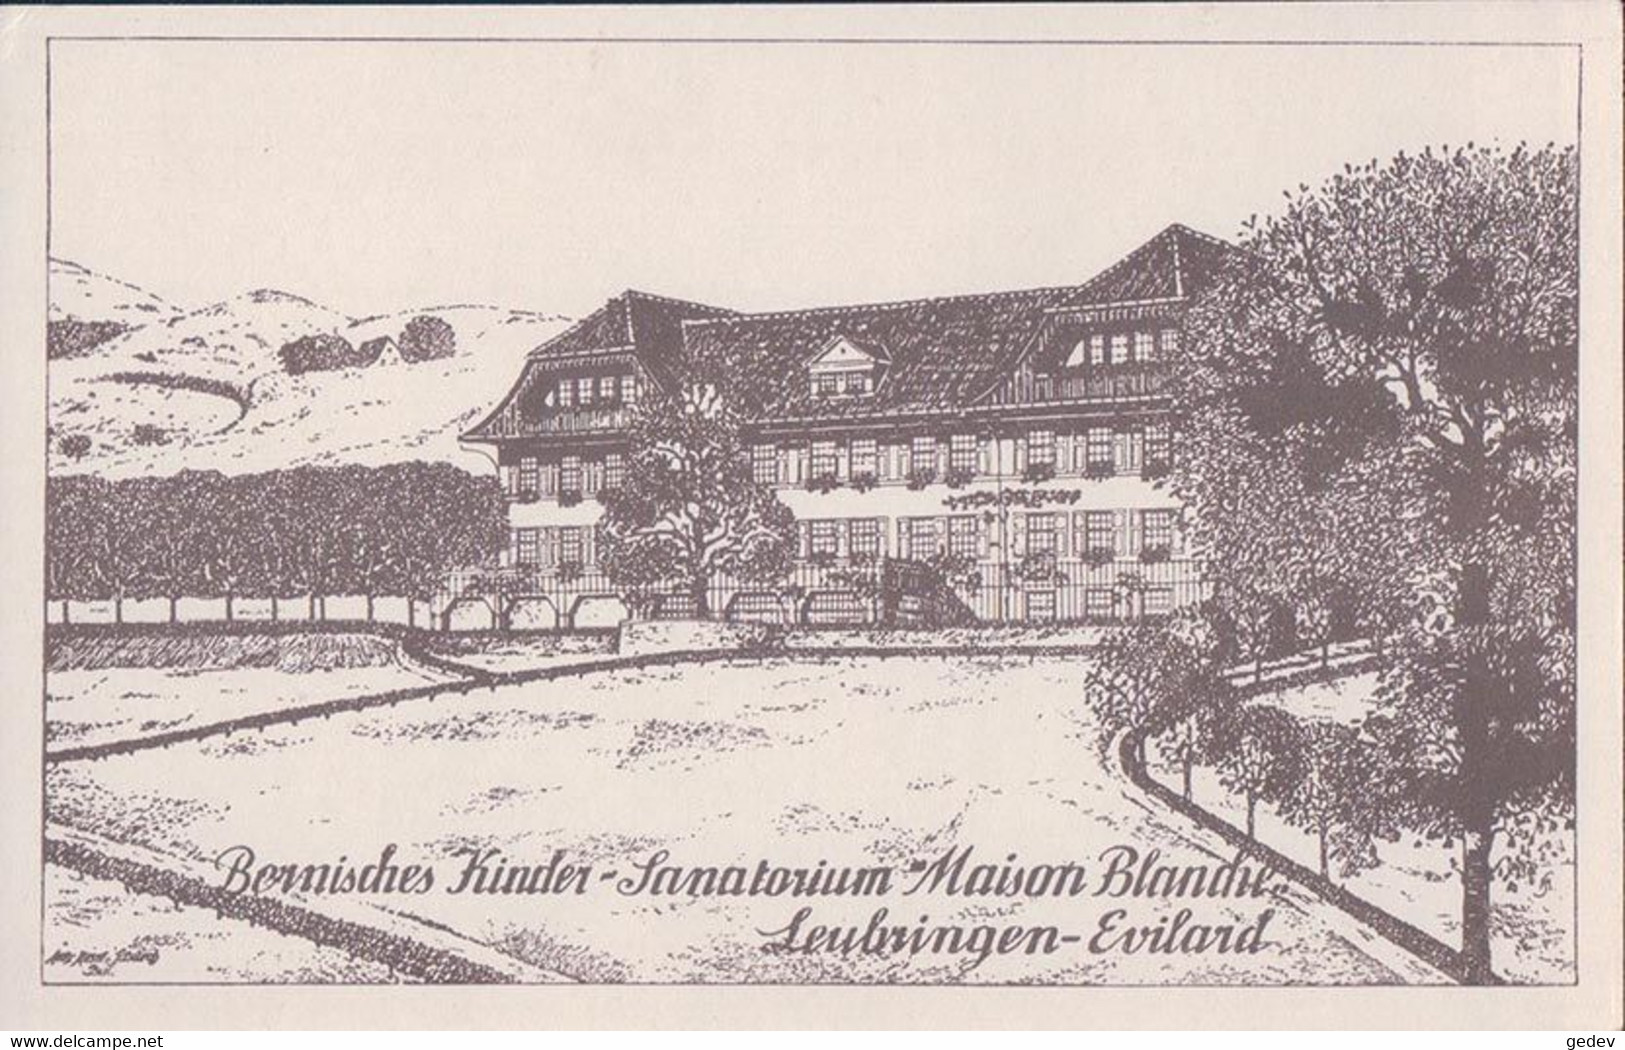 Leubringen-Evilard BE, Sanatorium Maison Blanche (4602) - Evilard